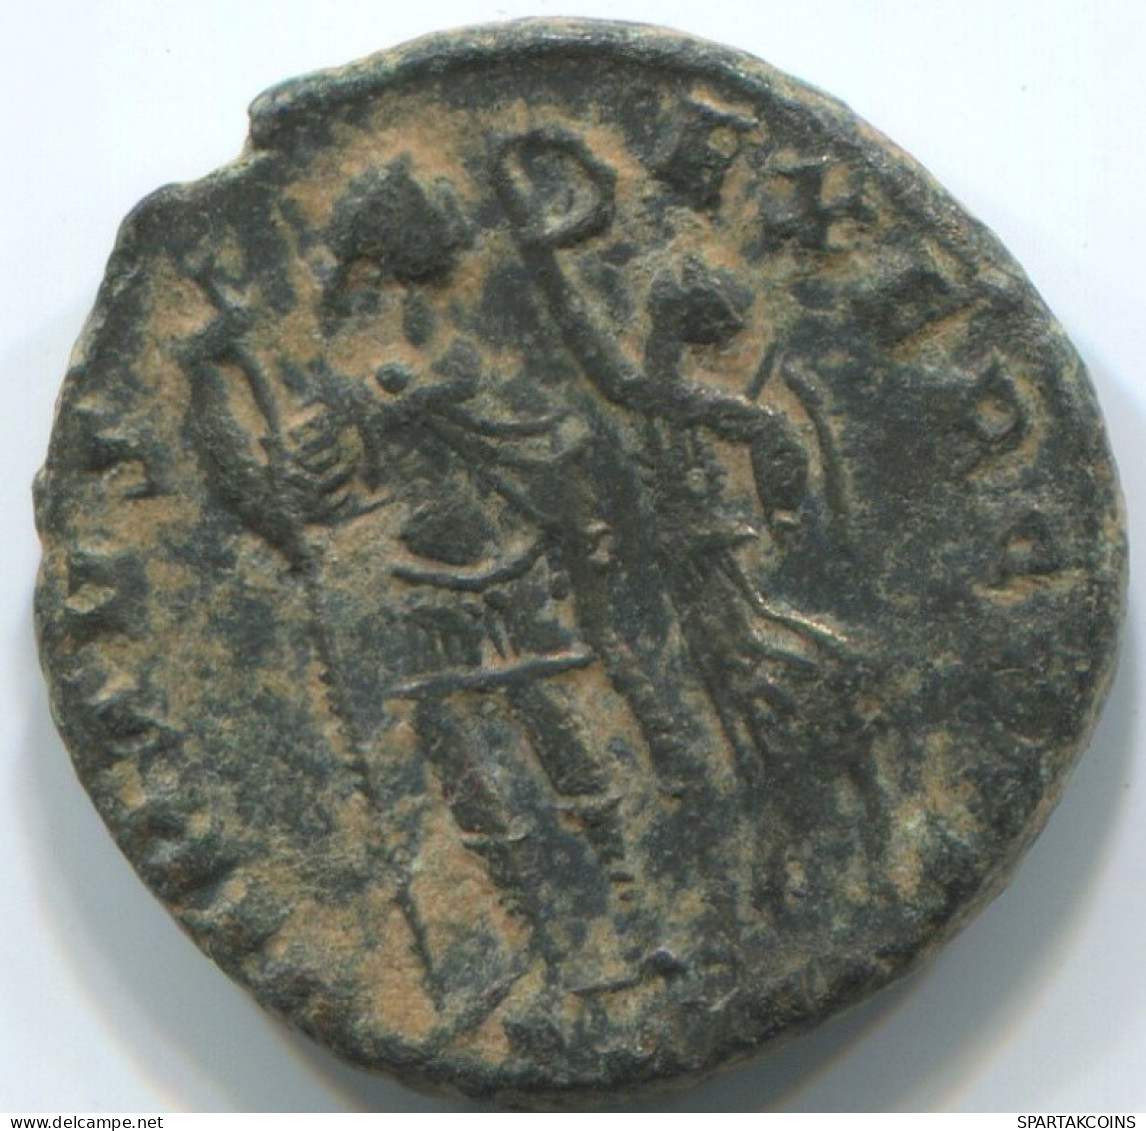 LATE ROMAN EMPIRE Coin Ancient Authentic Roman Coin 2.1g/16mm #ANT2383.14.U.A - La Fin De L'Empire (363-476)